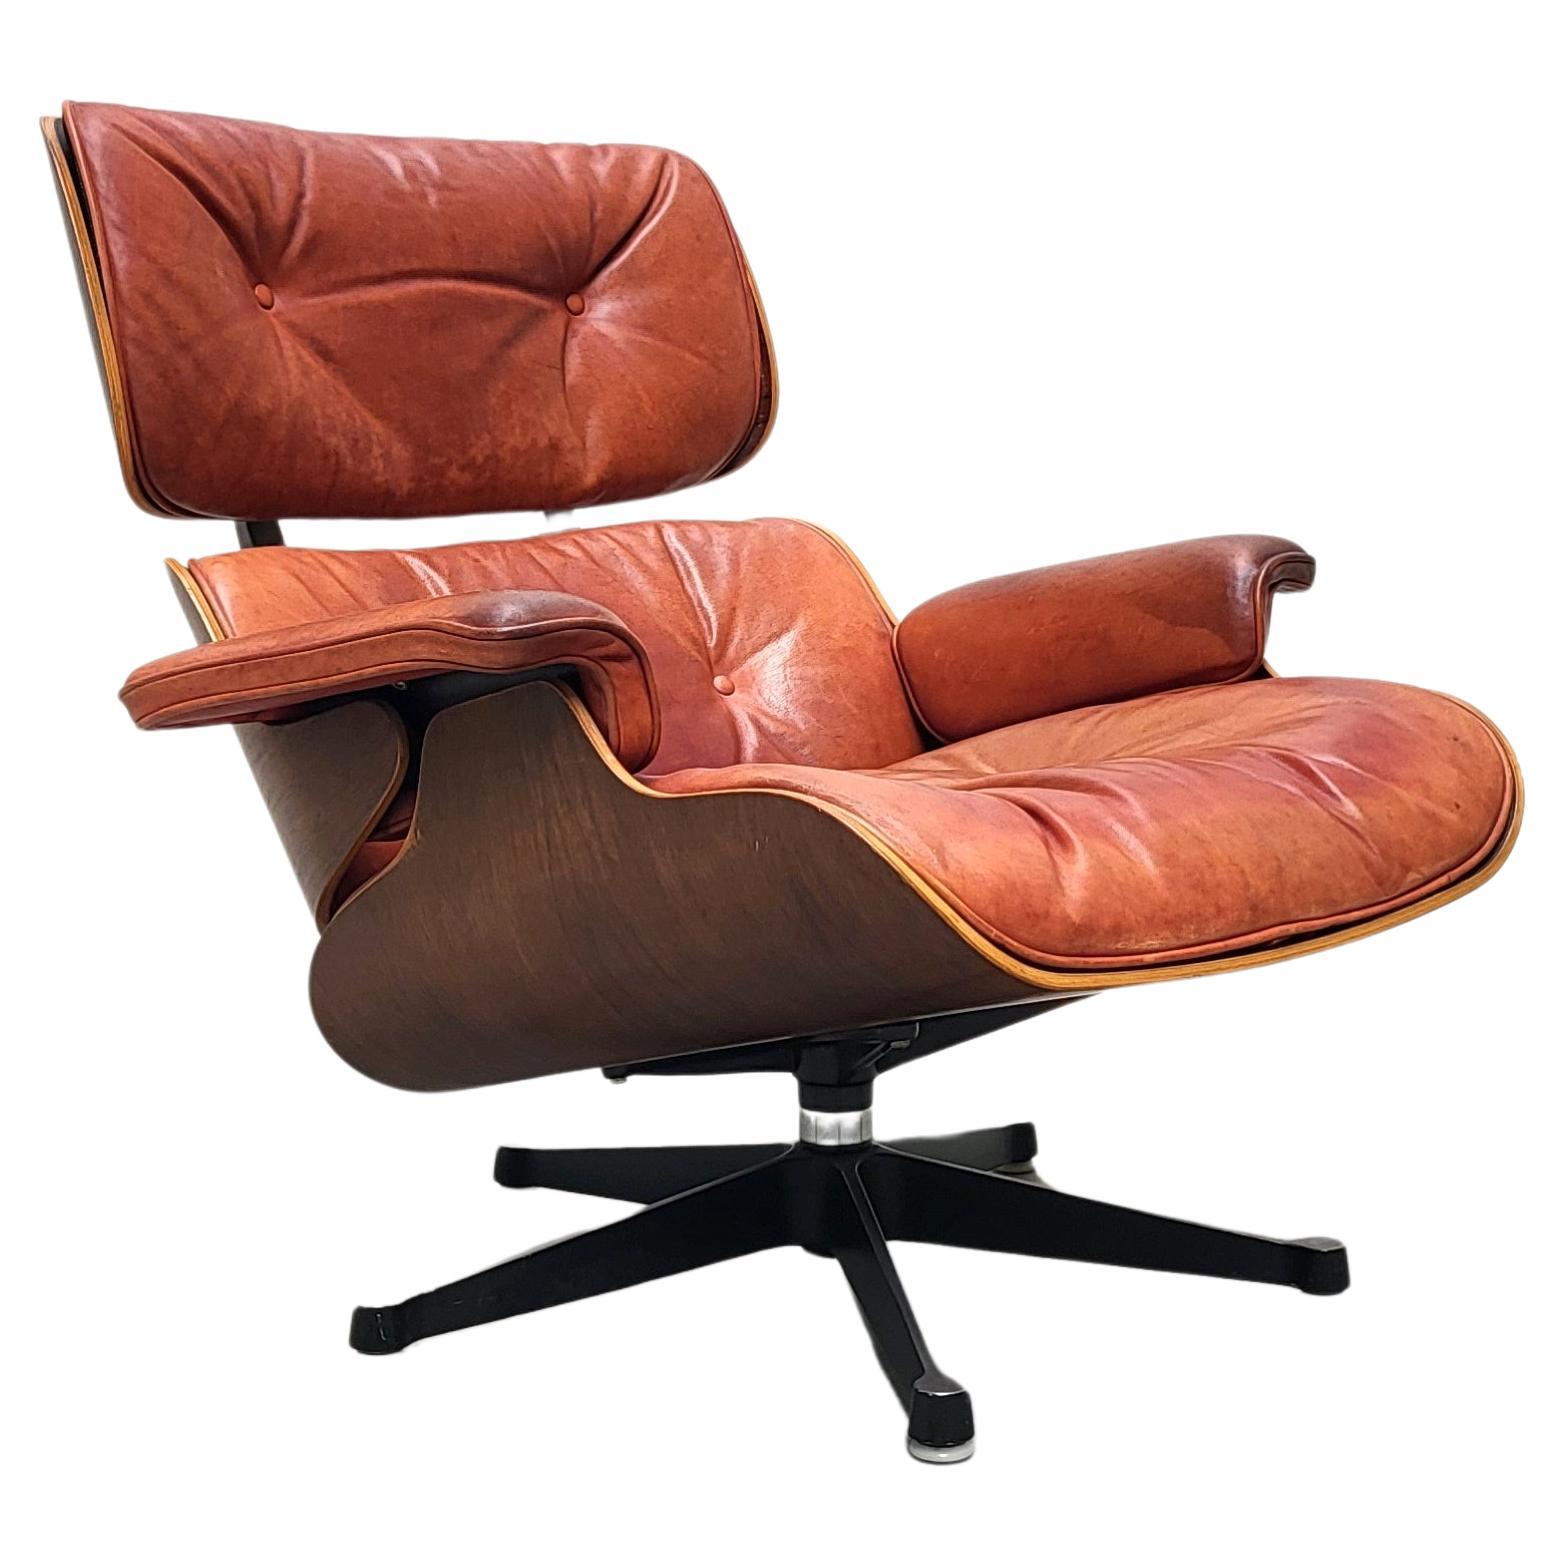 Eames Lounge Chair Ottoman